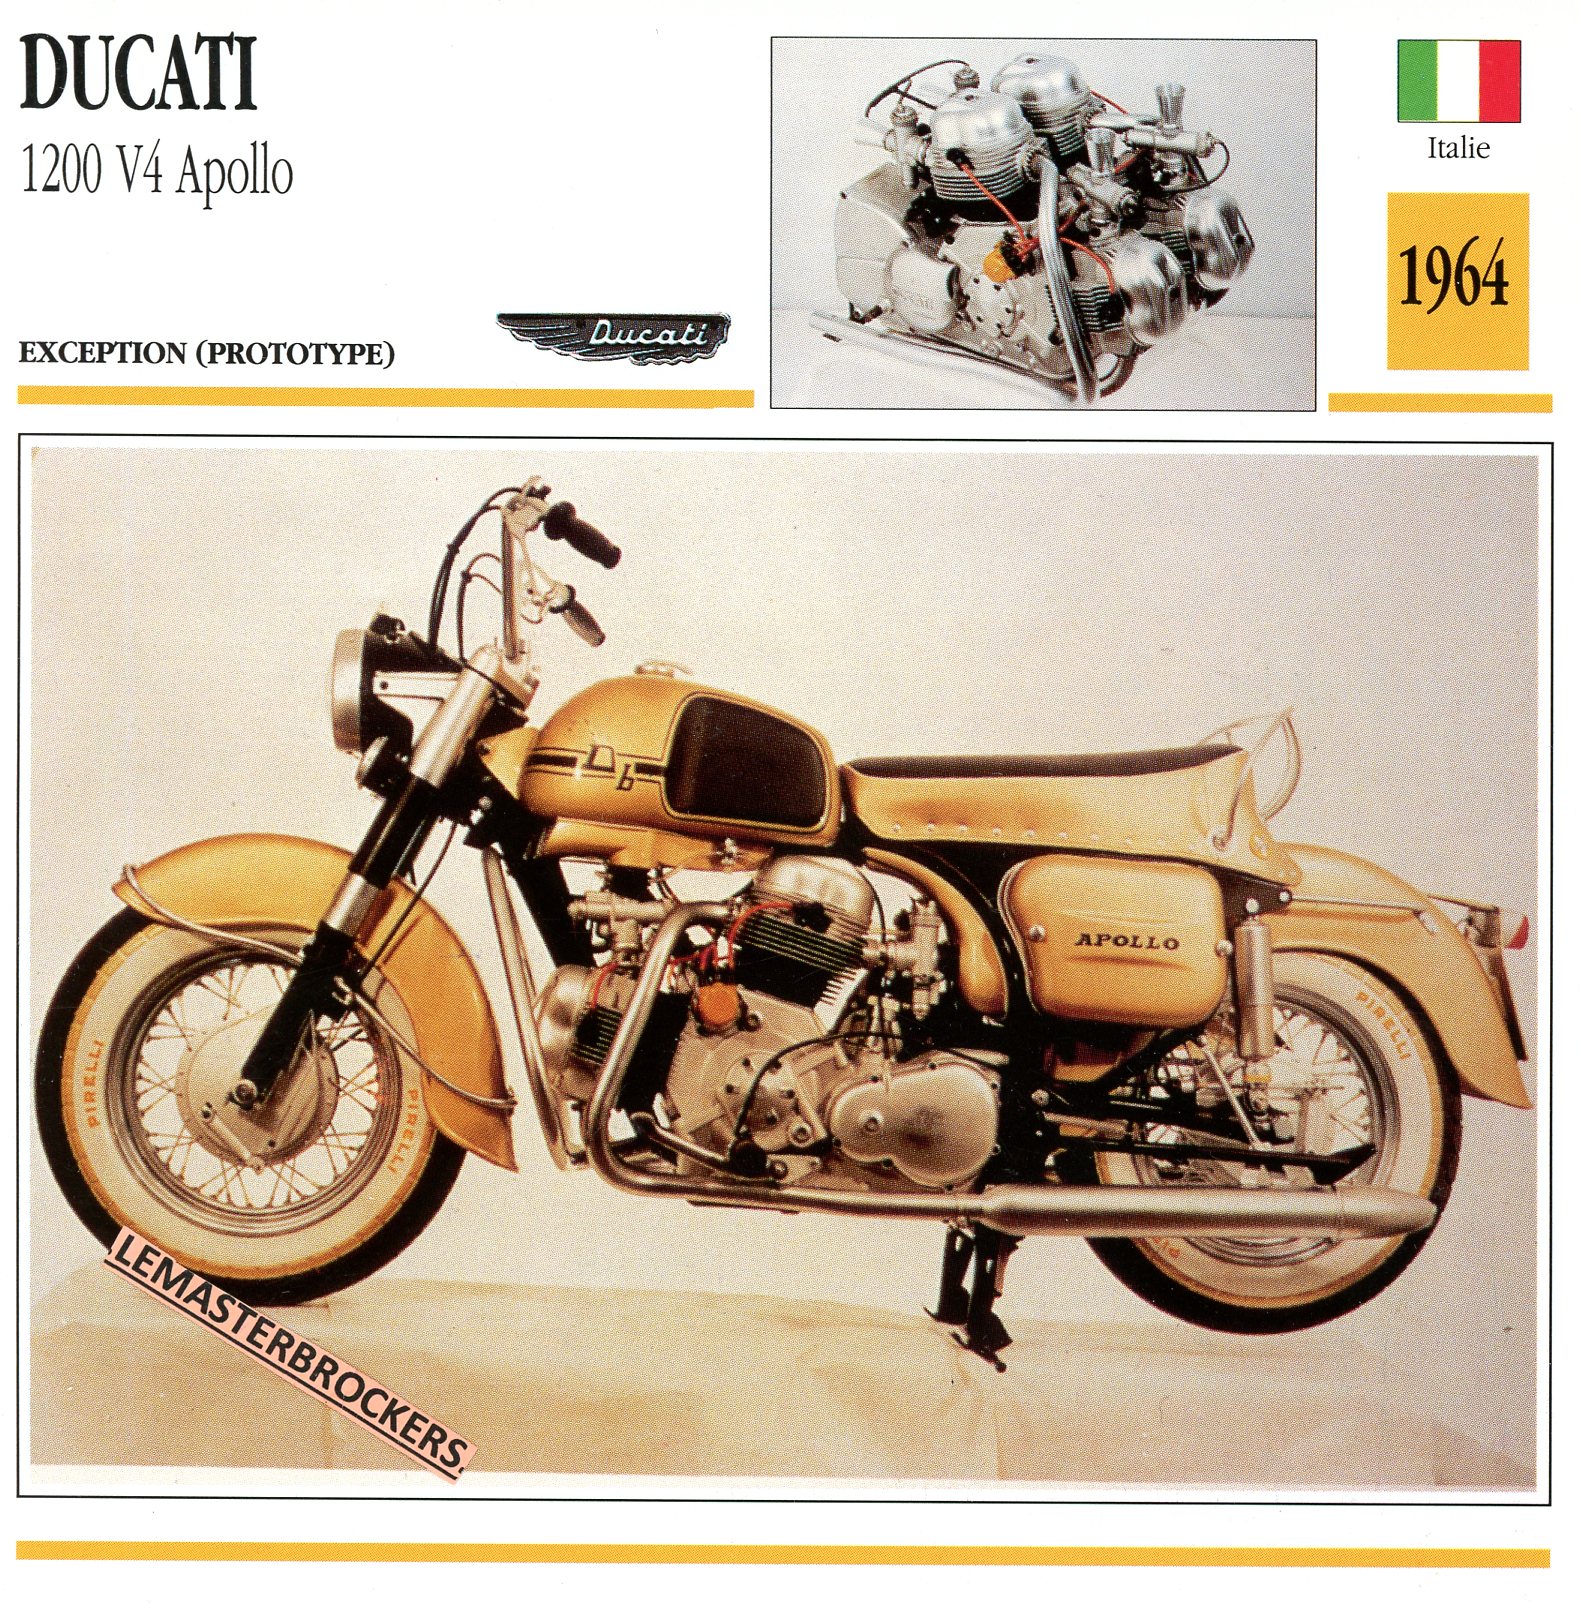 FICHE-MOTO-DUCATI-1200-V4-APOLLO-1964-LEMASTERBROCKERS-CARS-CARD